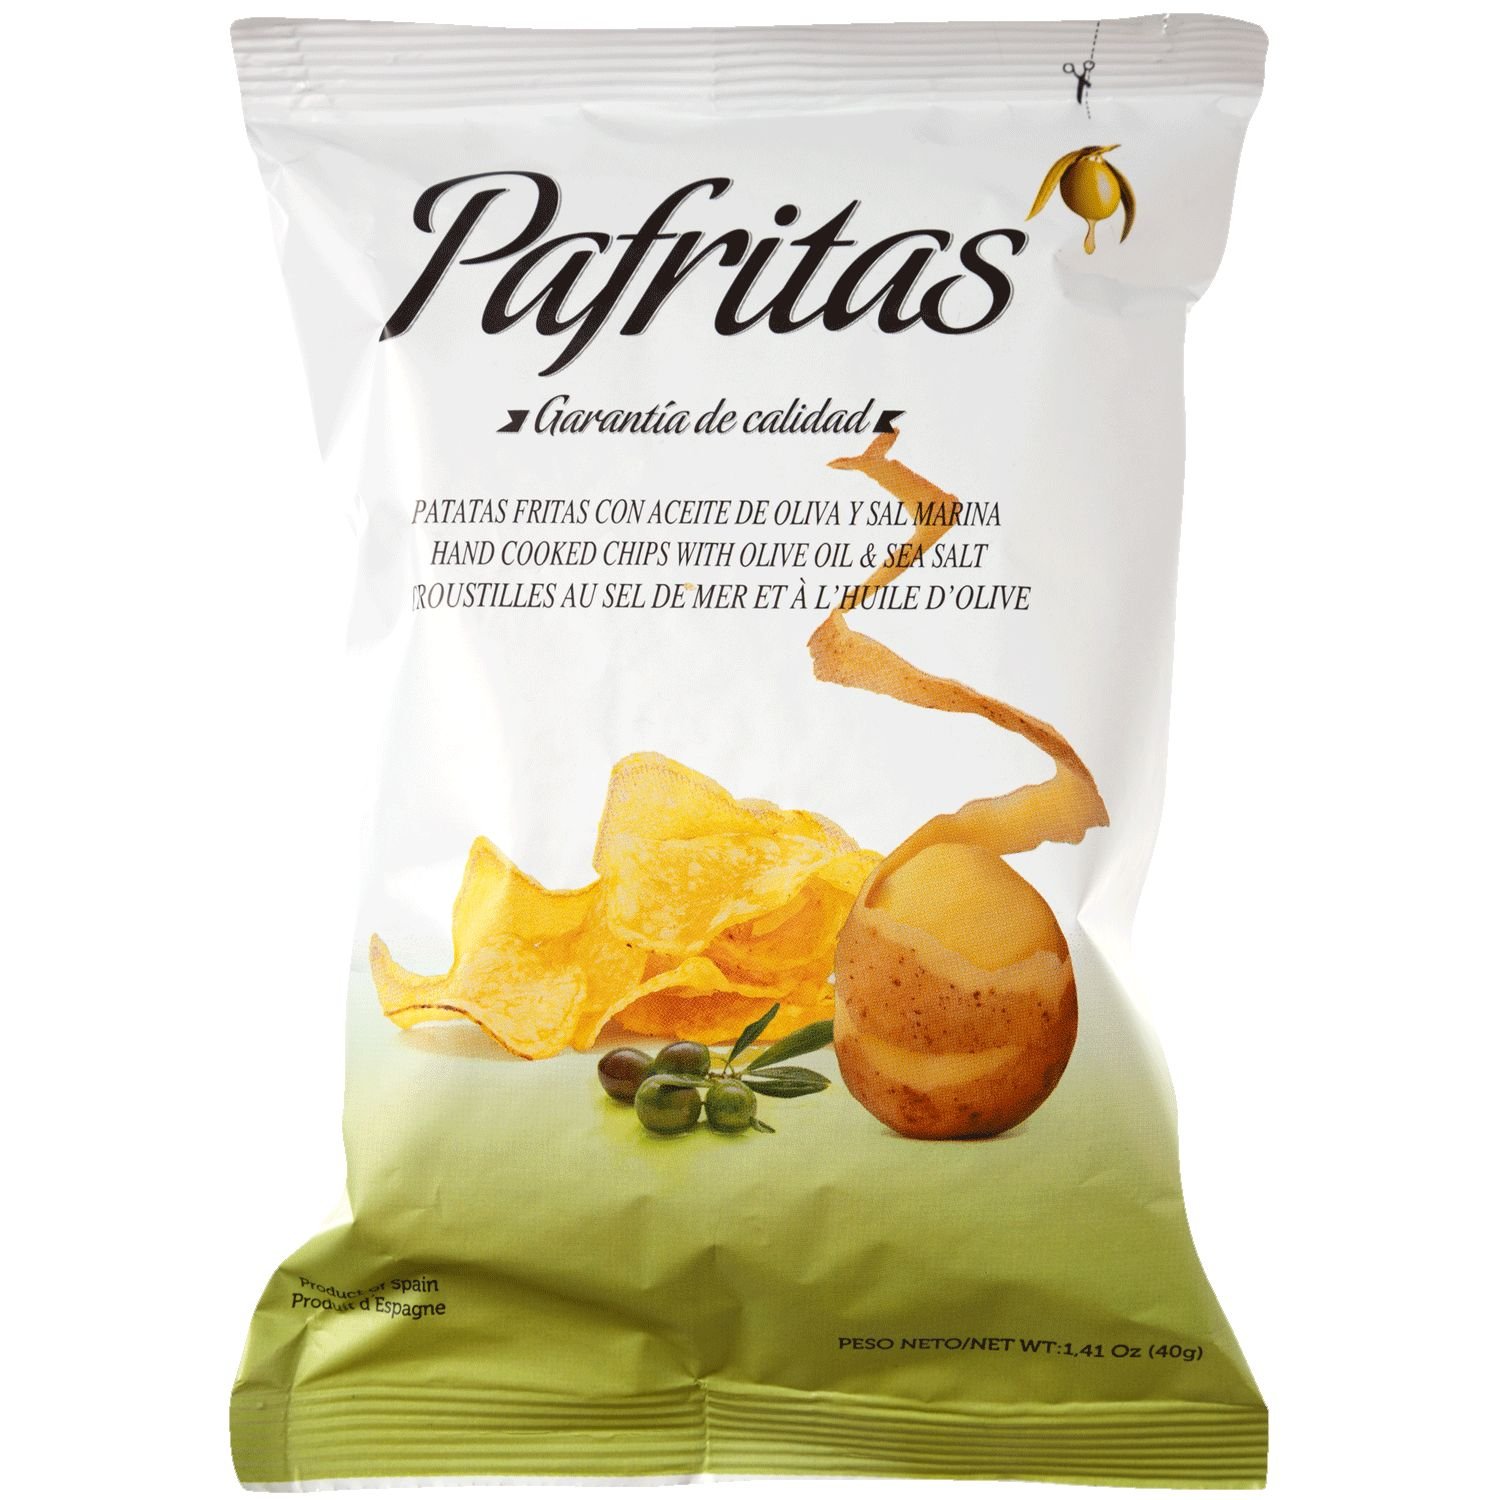 Набор чипсов Pafritas: с чесноком, каенским перцем и солью 3 шт. х 40 г - фото 4